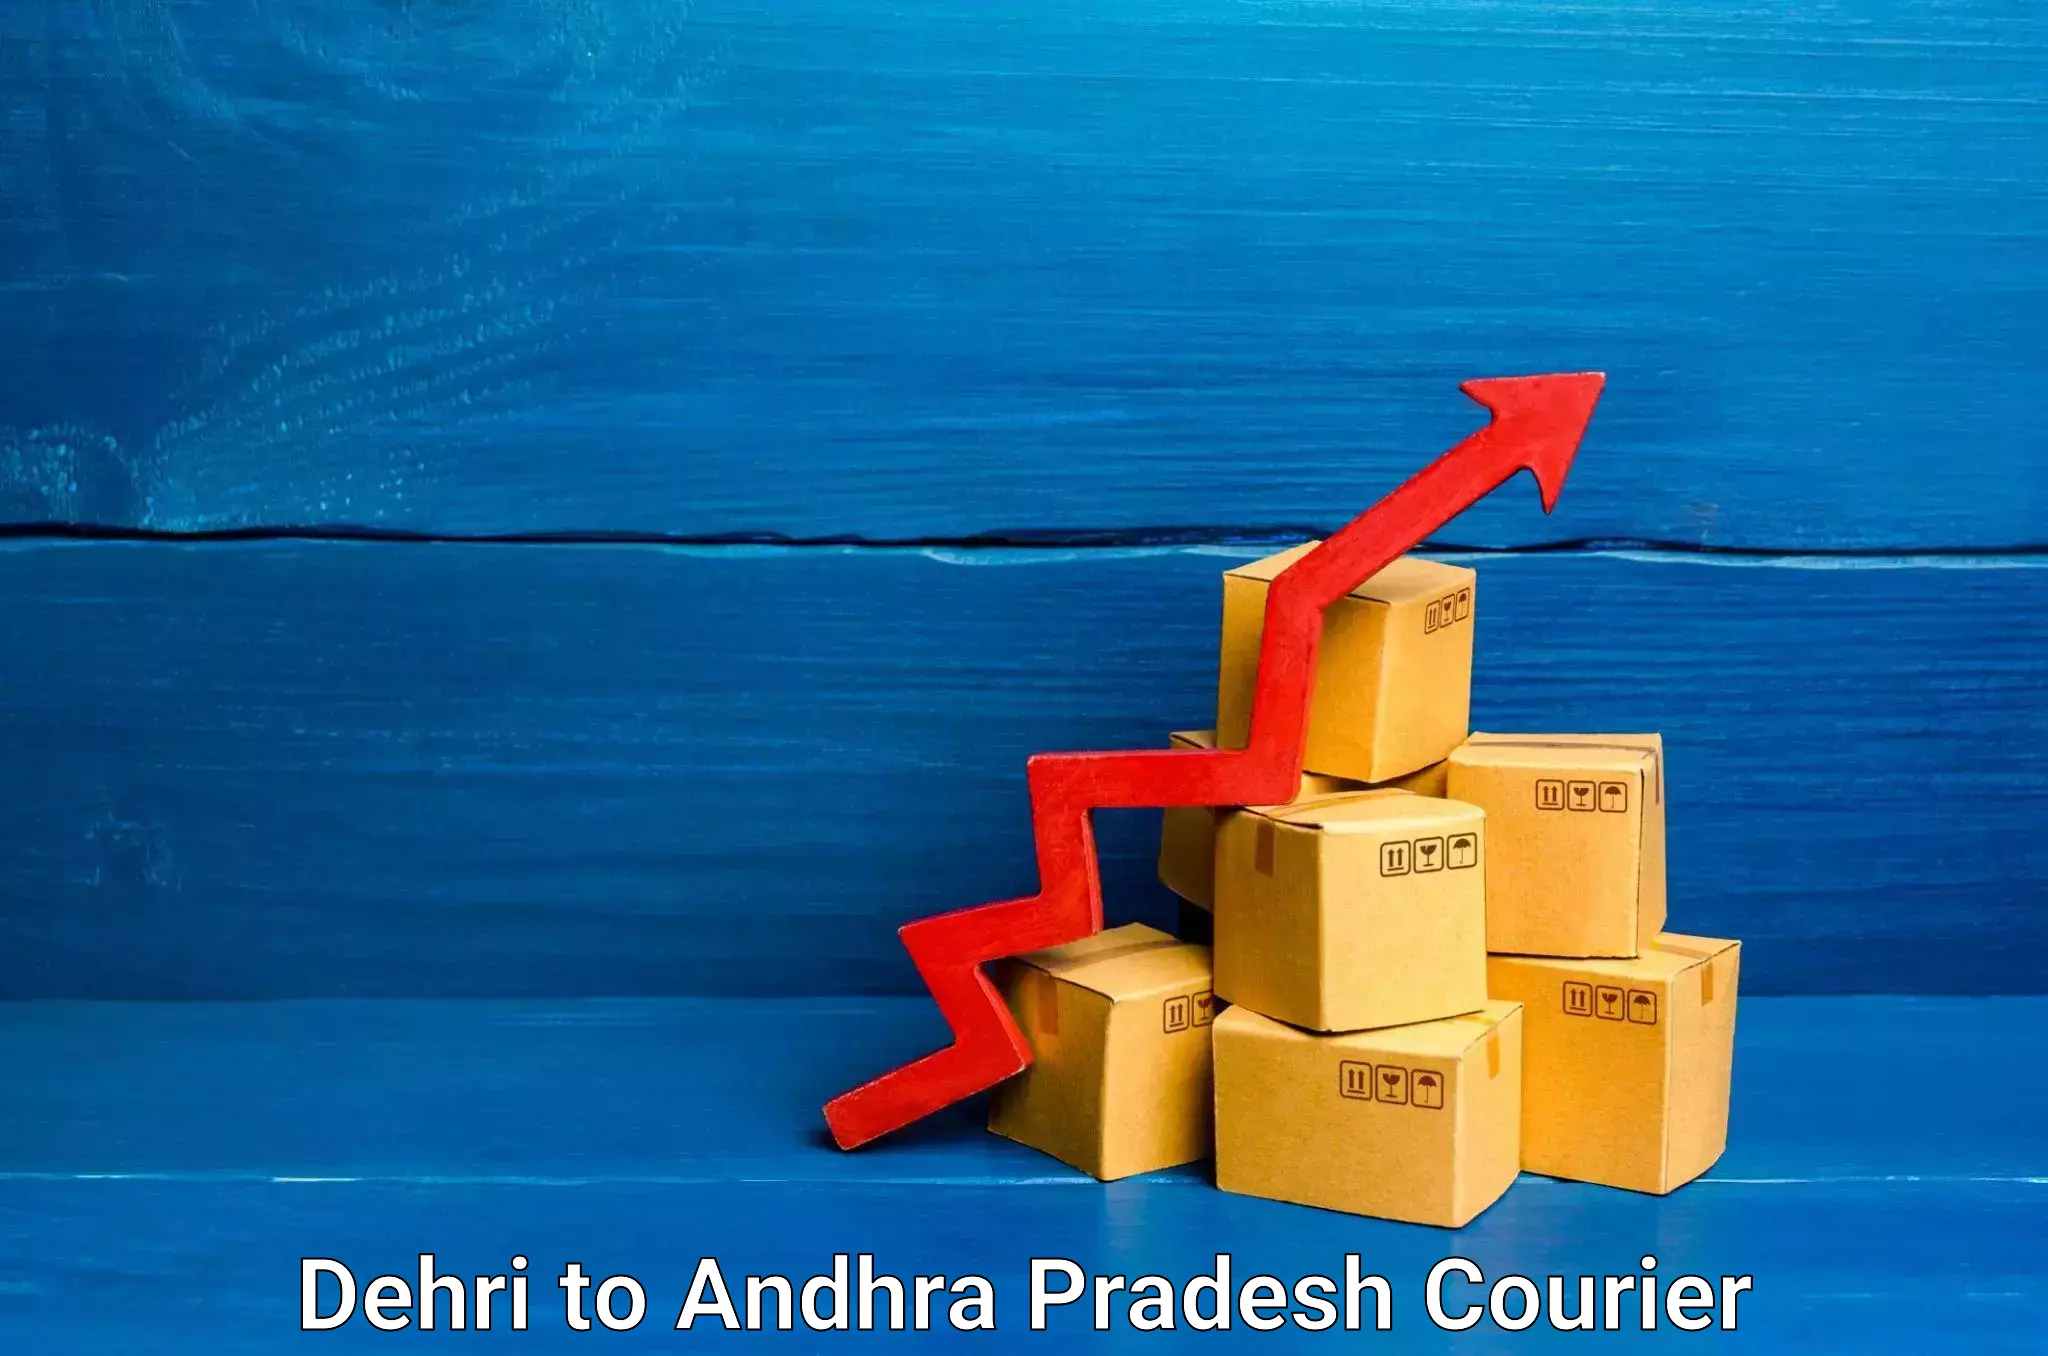 Quality relocation assistance Dehri to Andhra Pradesh